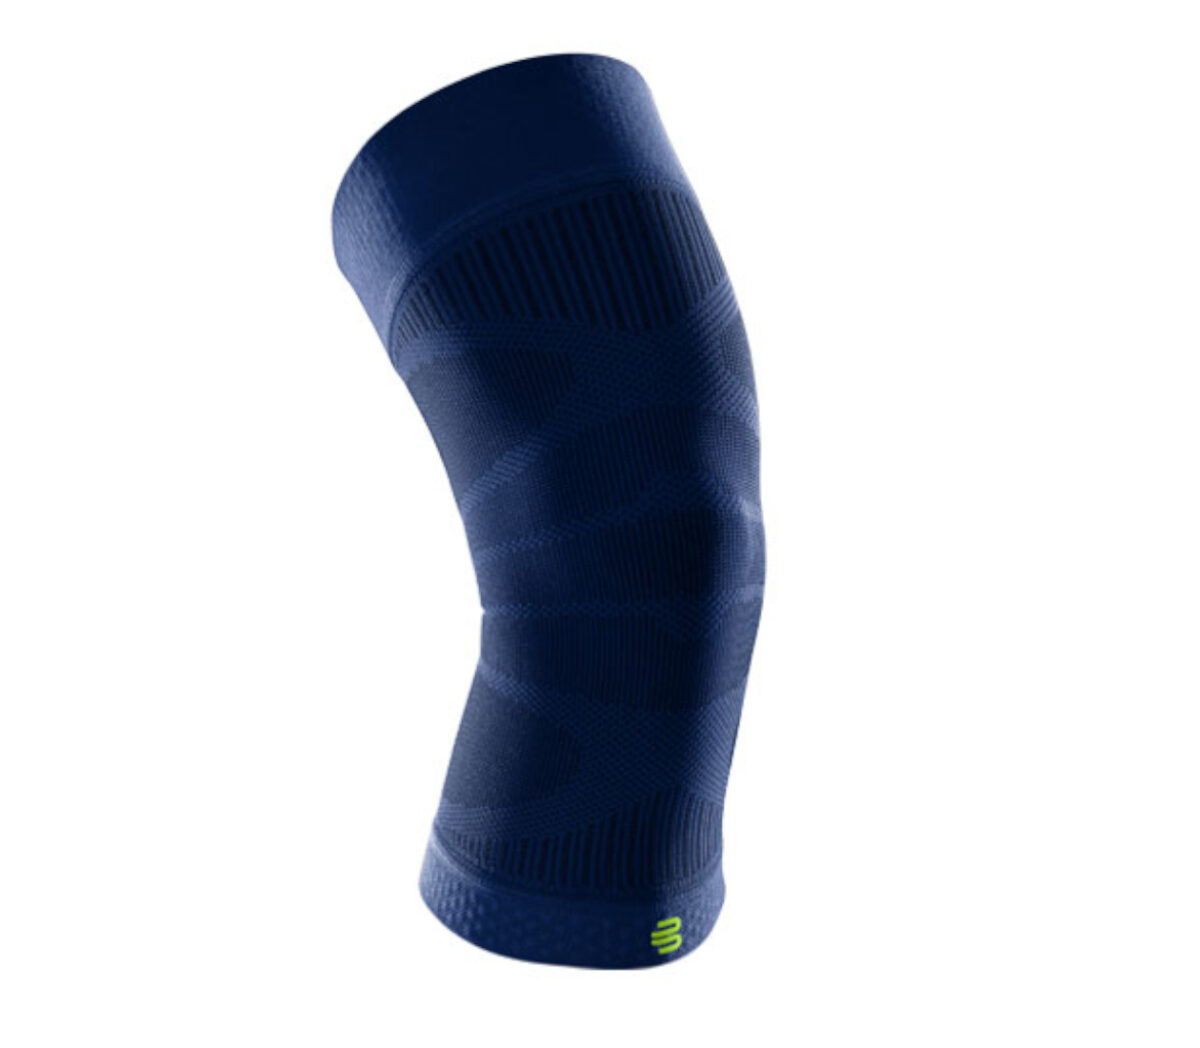 Fascia bauerfeind sport compression knee support navy unisex